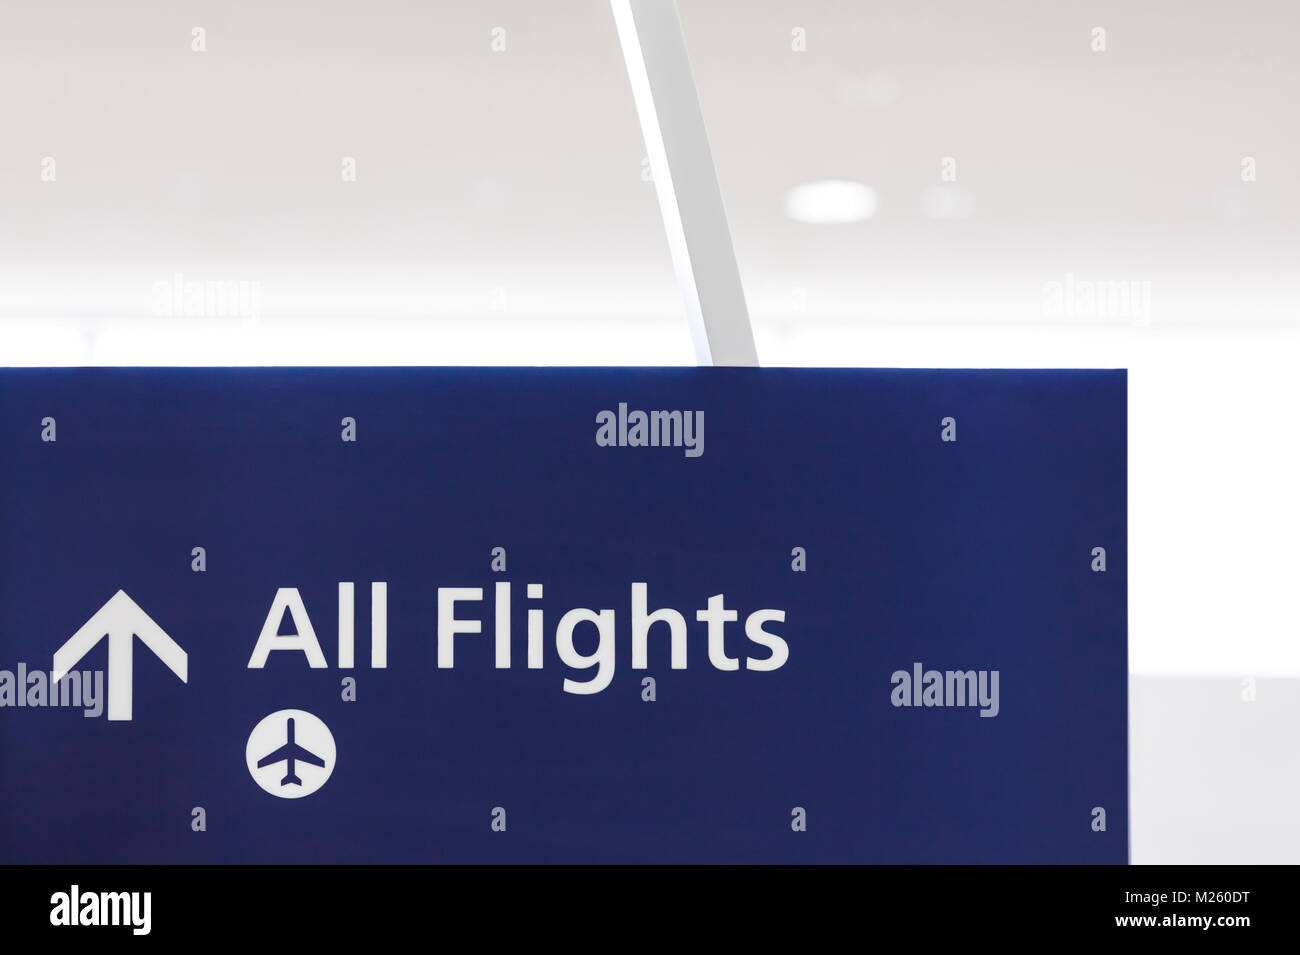 "Todos los vuelos del aeropuerto de firmar con el símbolo de avión y la flecha que indica la dirección a la zona de embarque, Gates. Concepto de viaje aéreo. Foto de stock